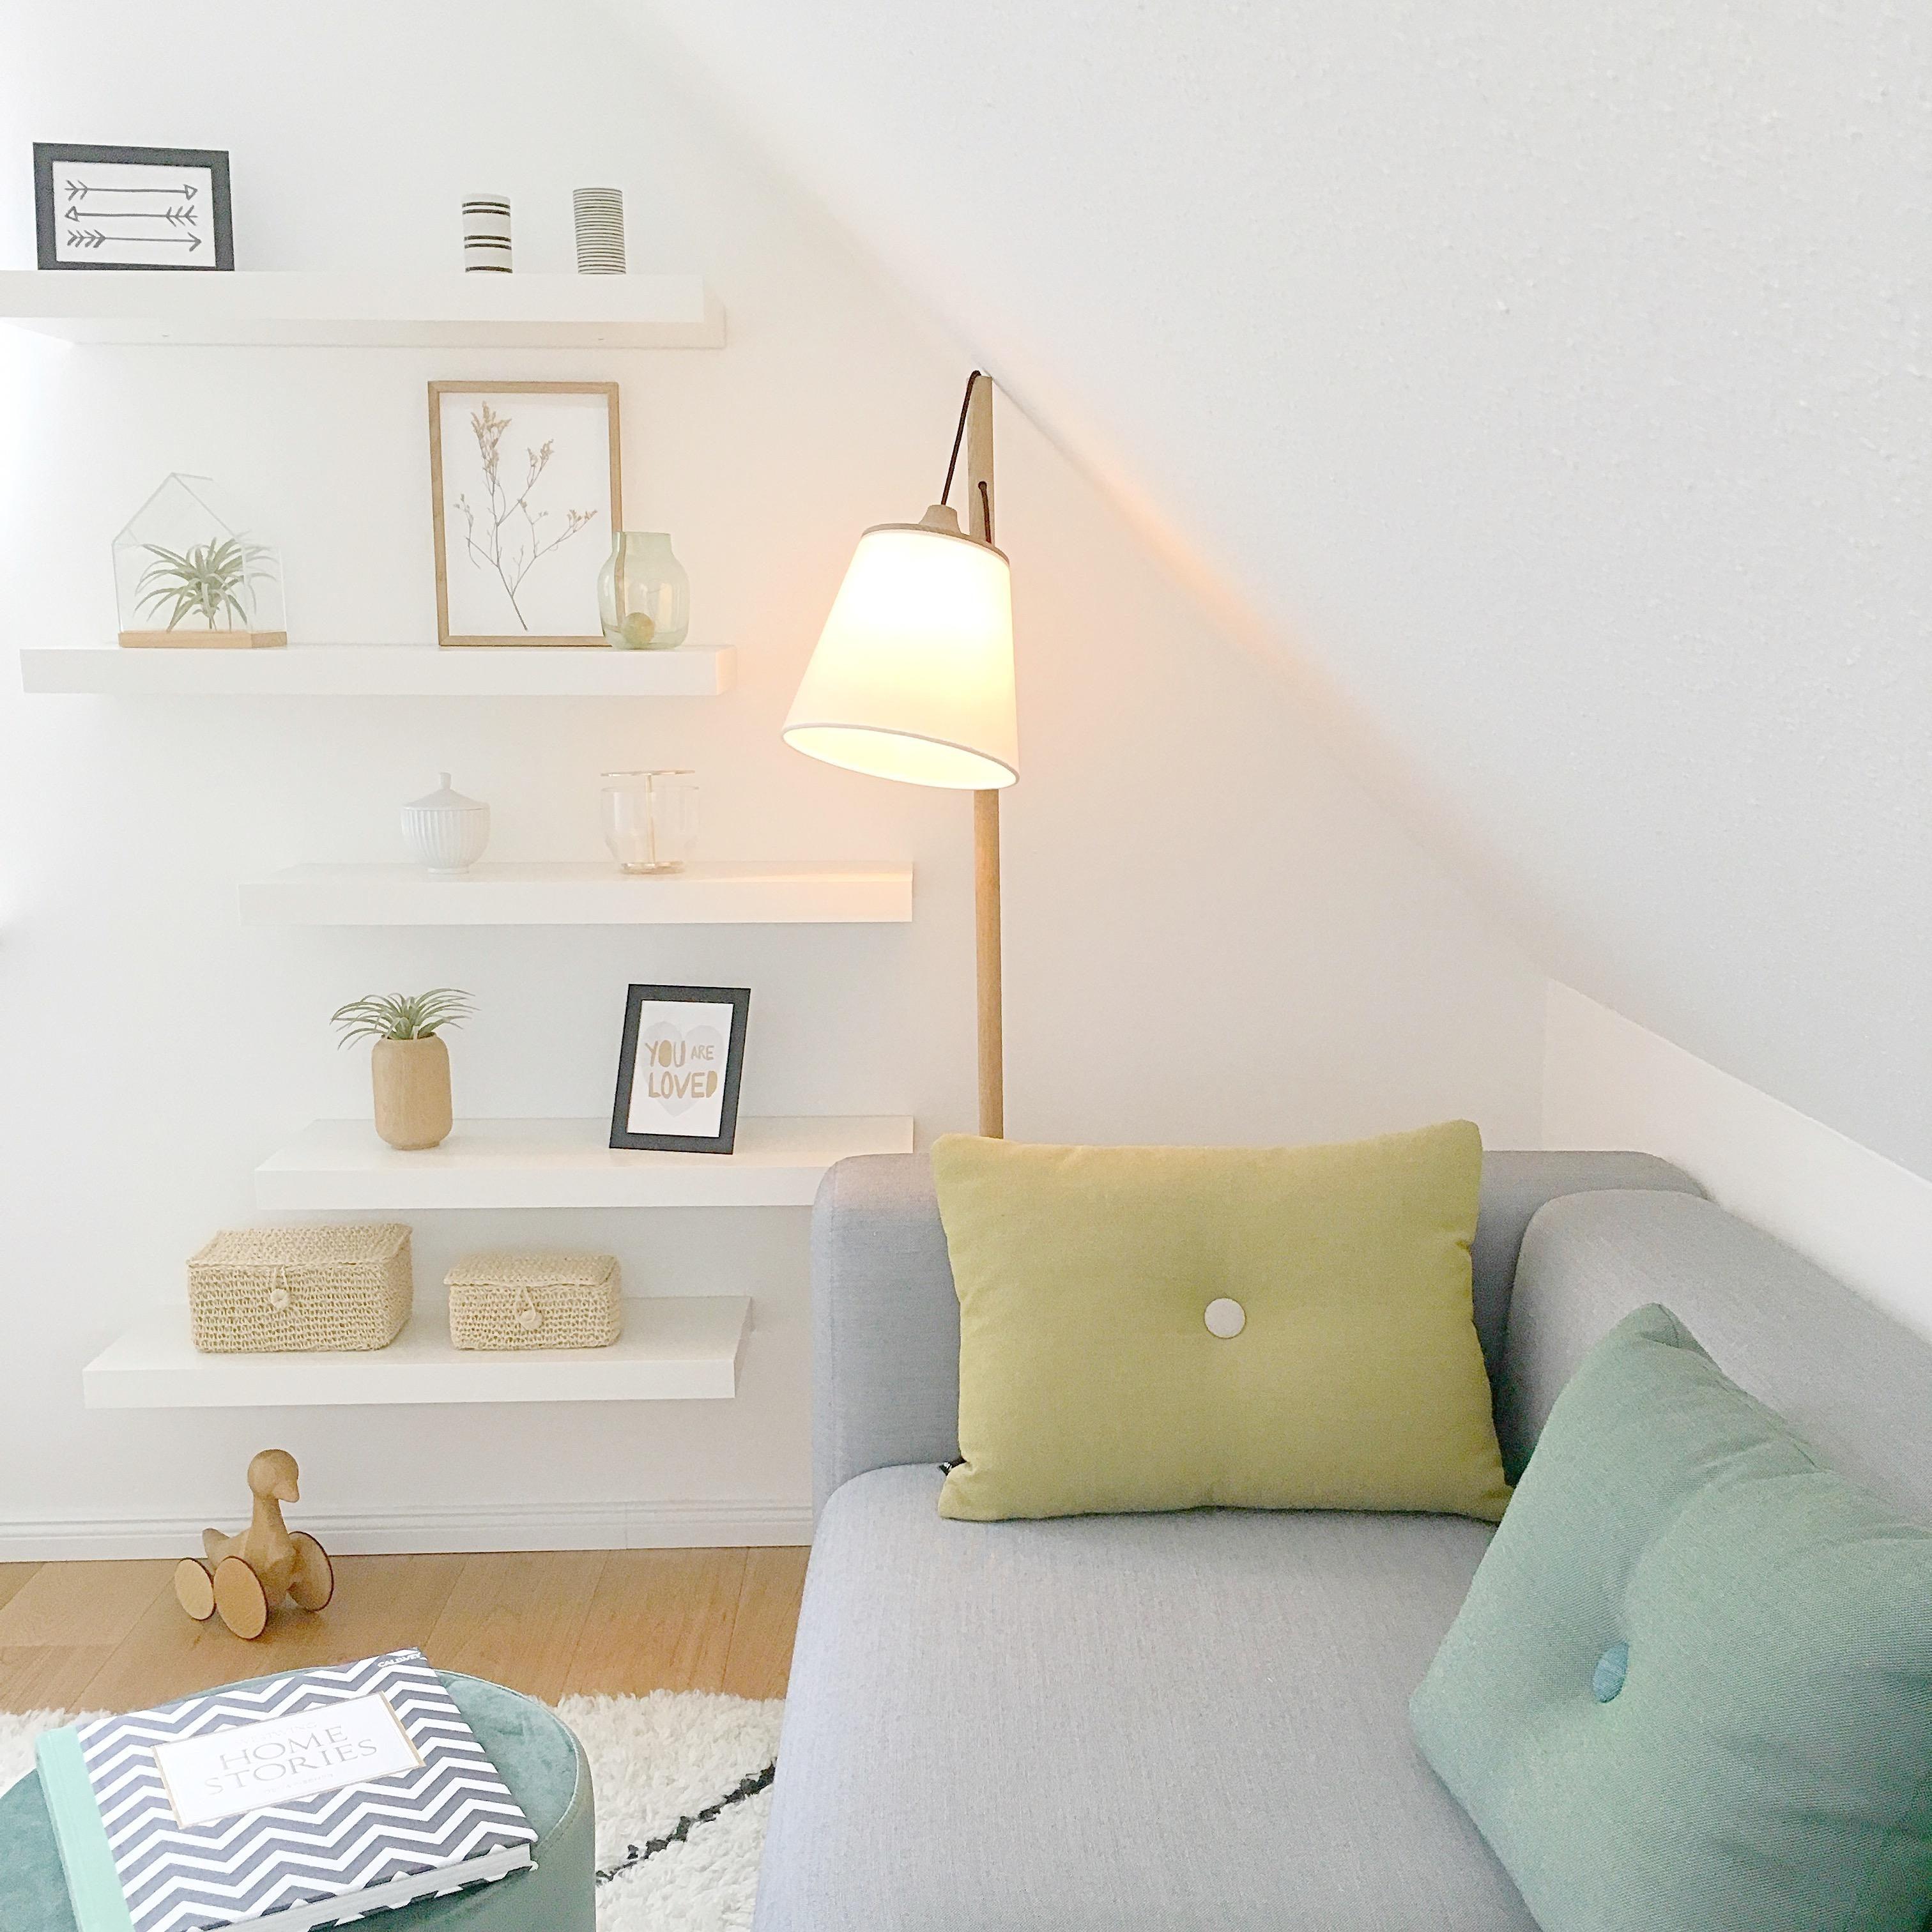 Endlich eine Lösung für die Wand im Gästezimmer gefunden •••••weiße Regale #Skandinavisch #Living #Wohnen #Gästezimmer #